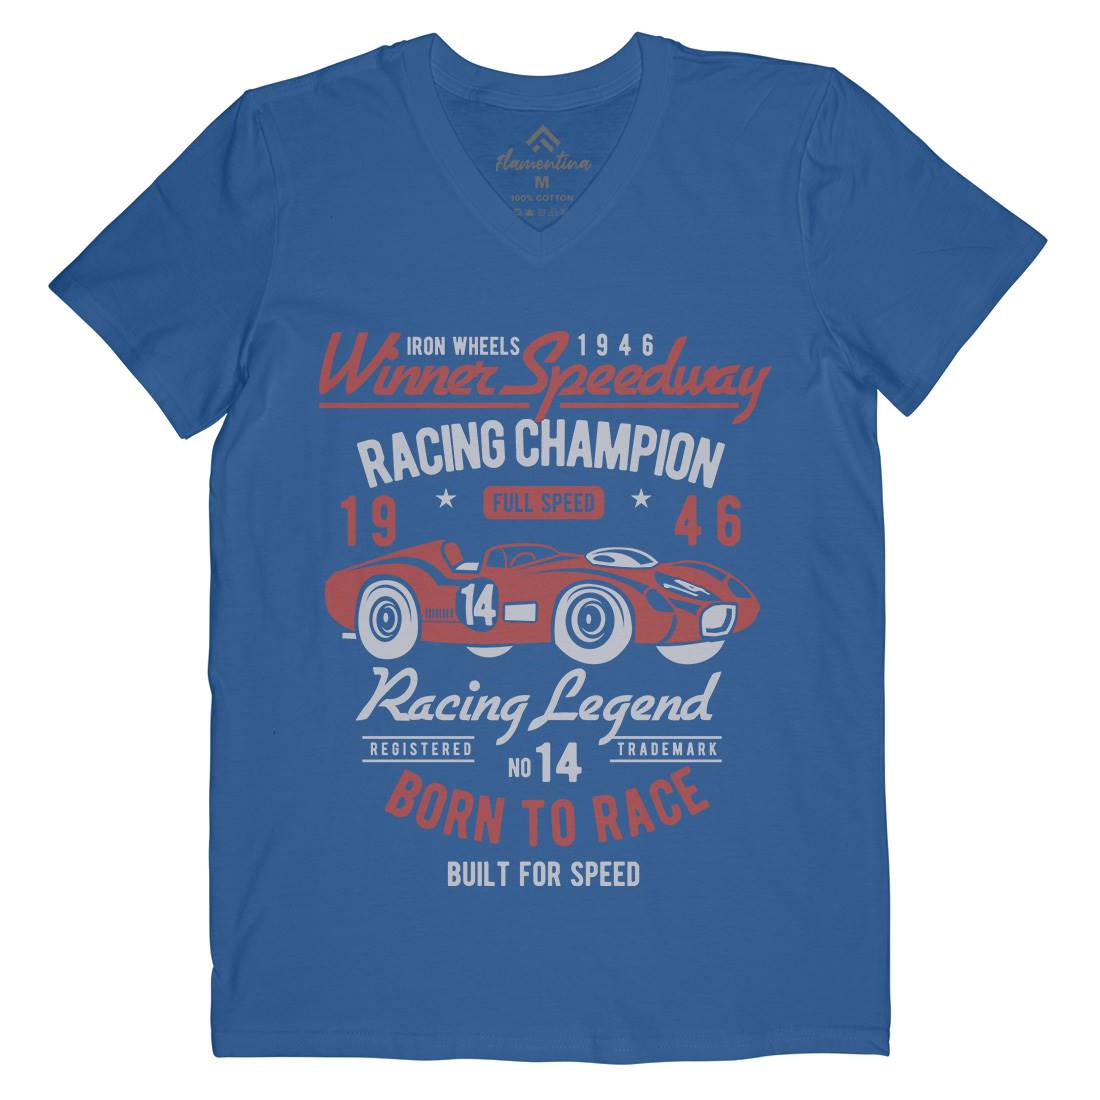 Winner Speedway Mens V-Neck T-Shirt Cars B476